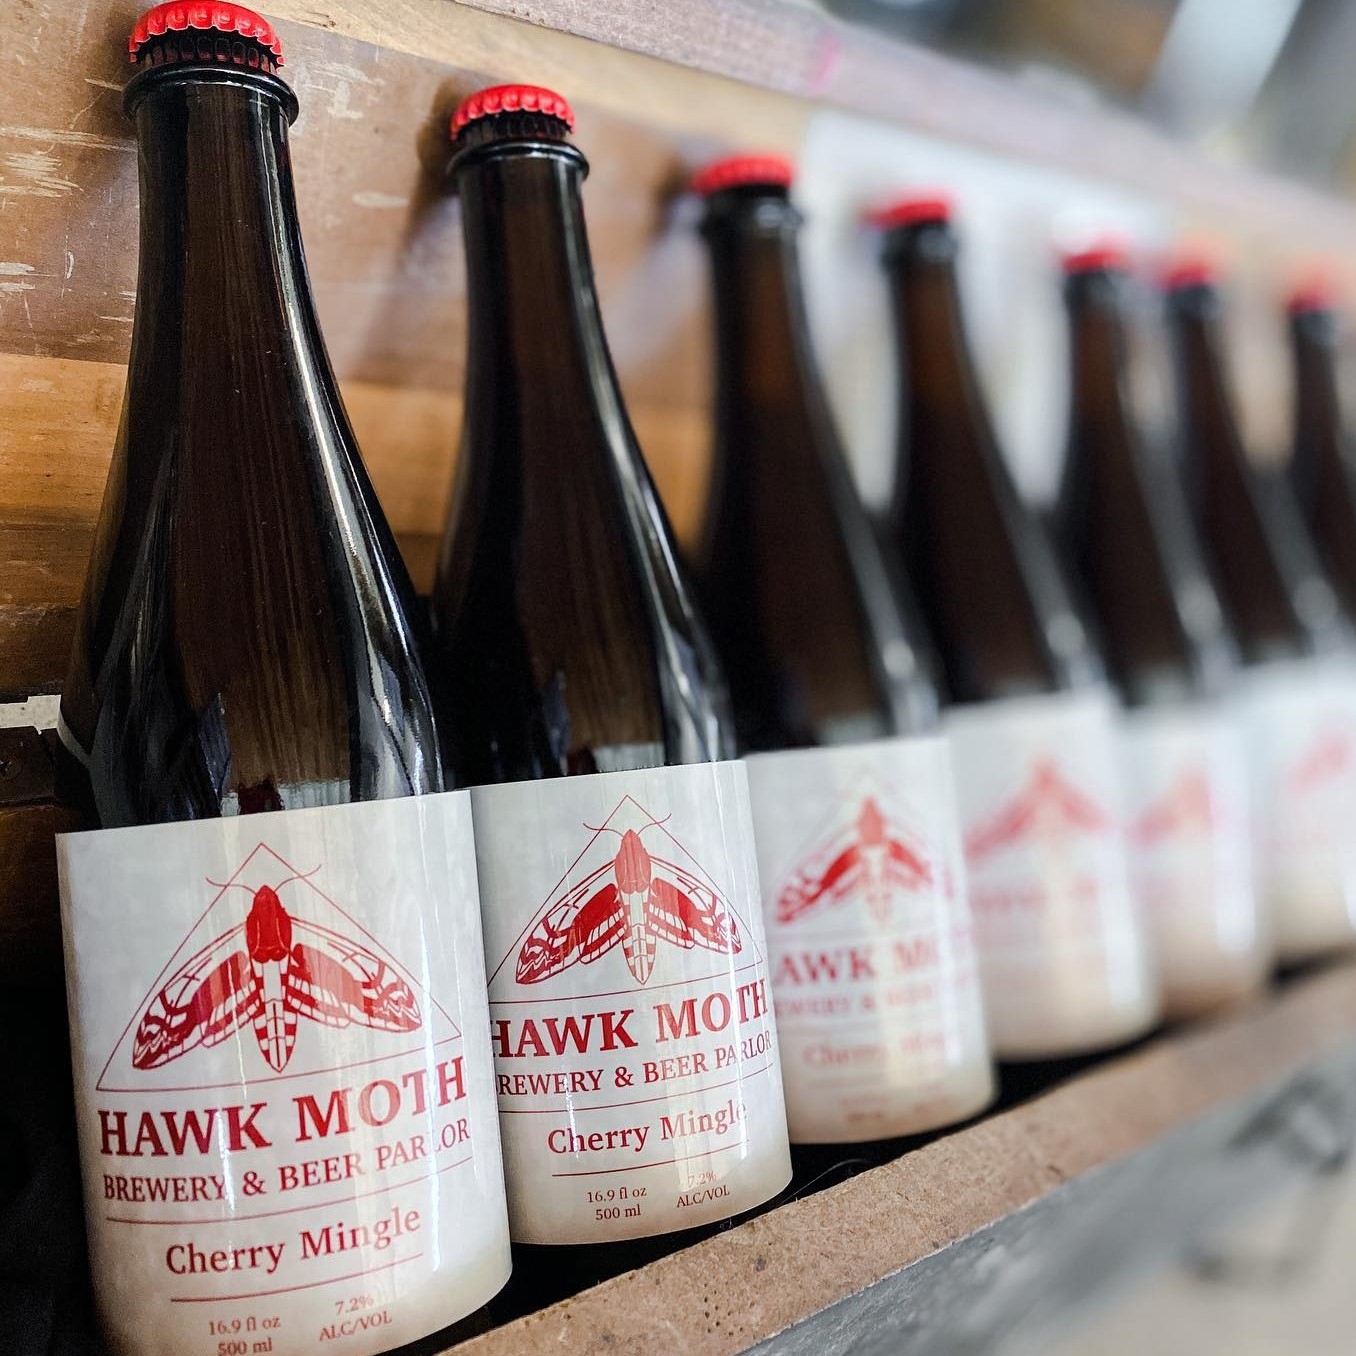 Hawk Moth Brewery Beer